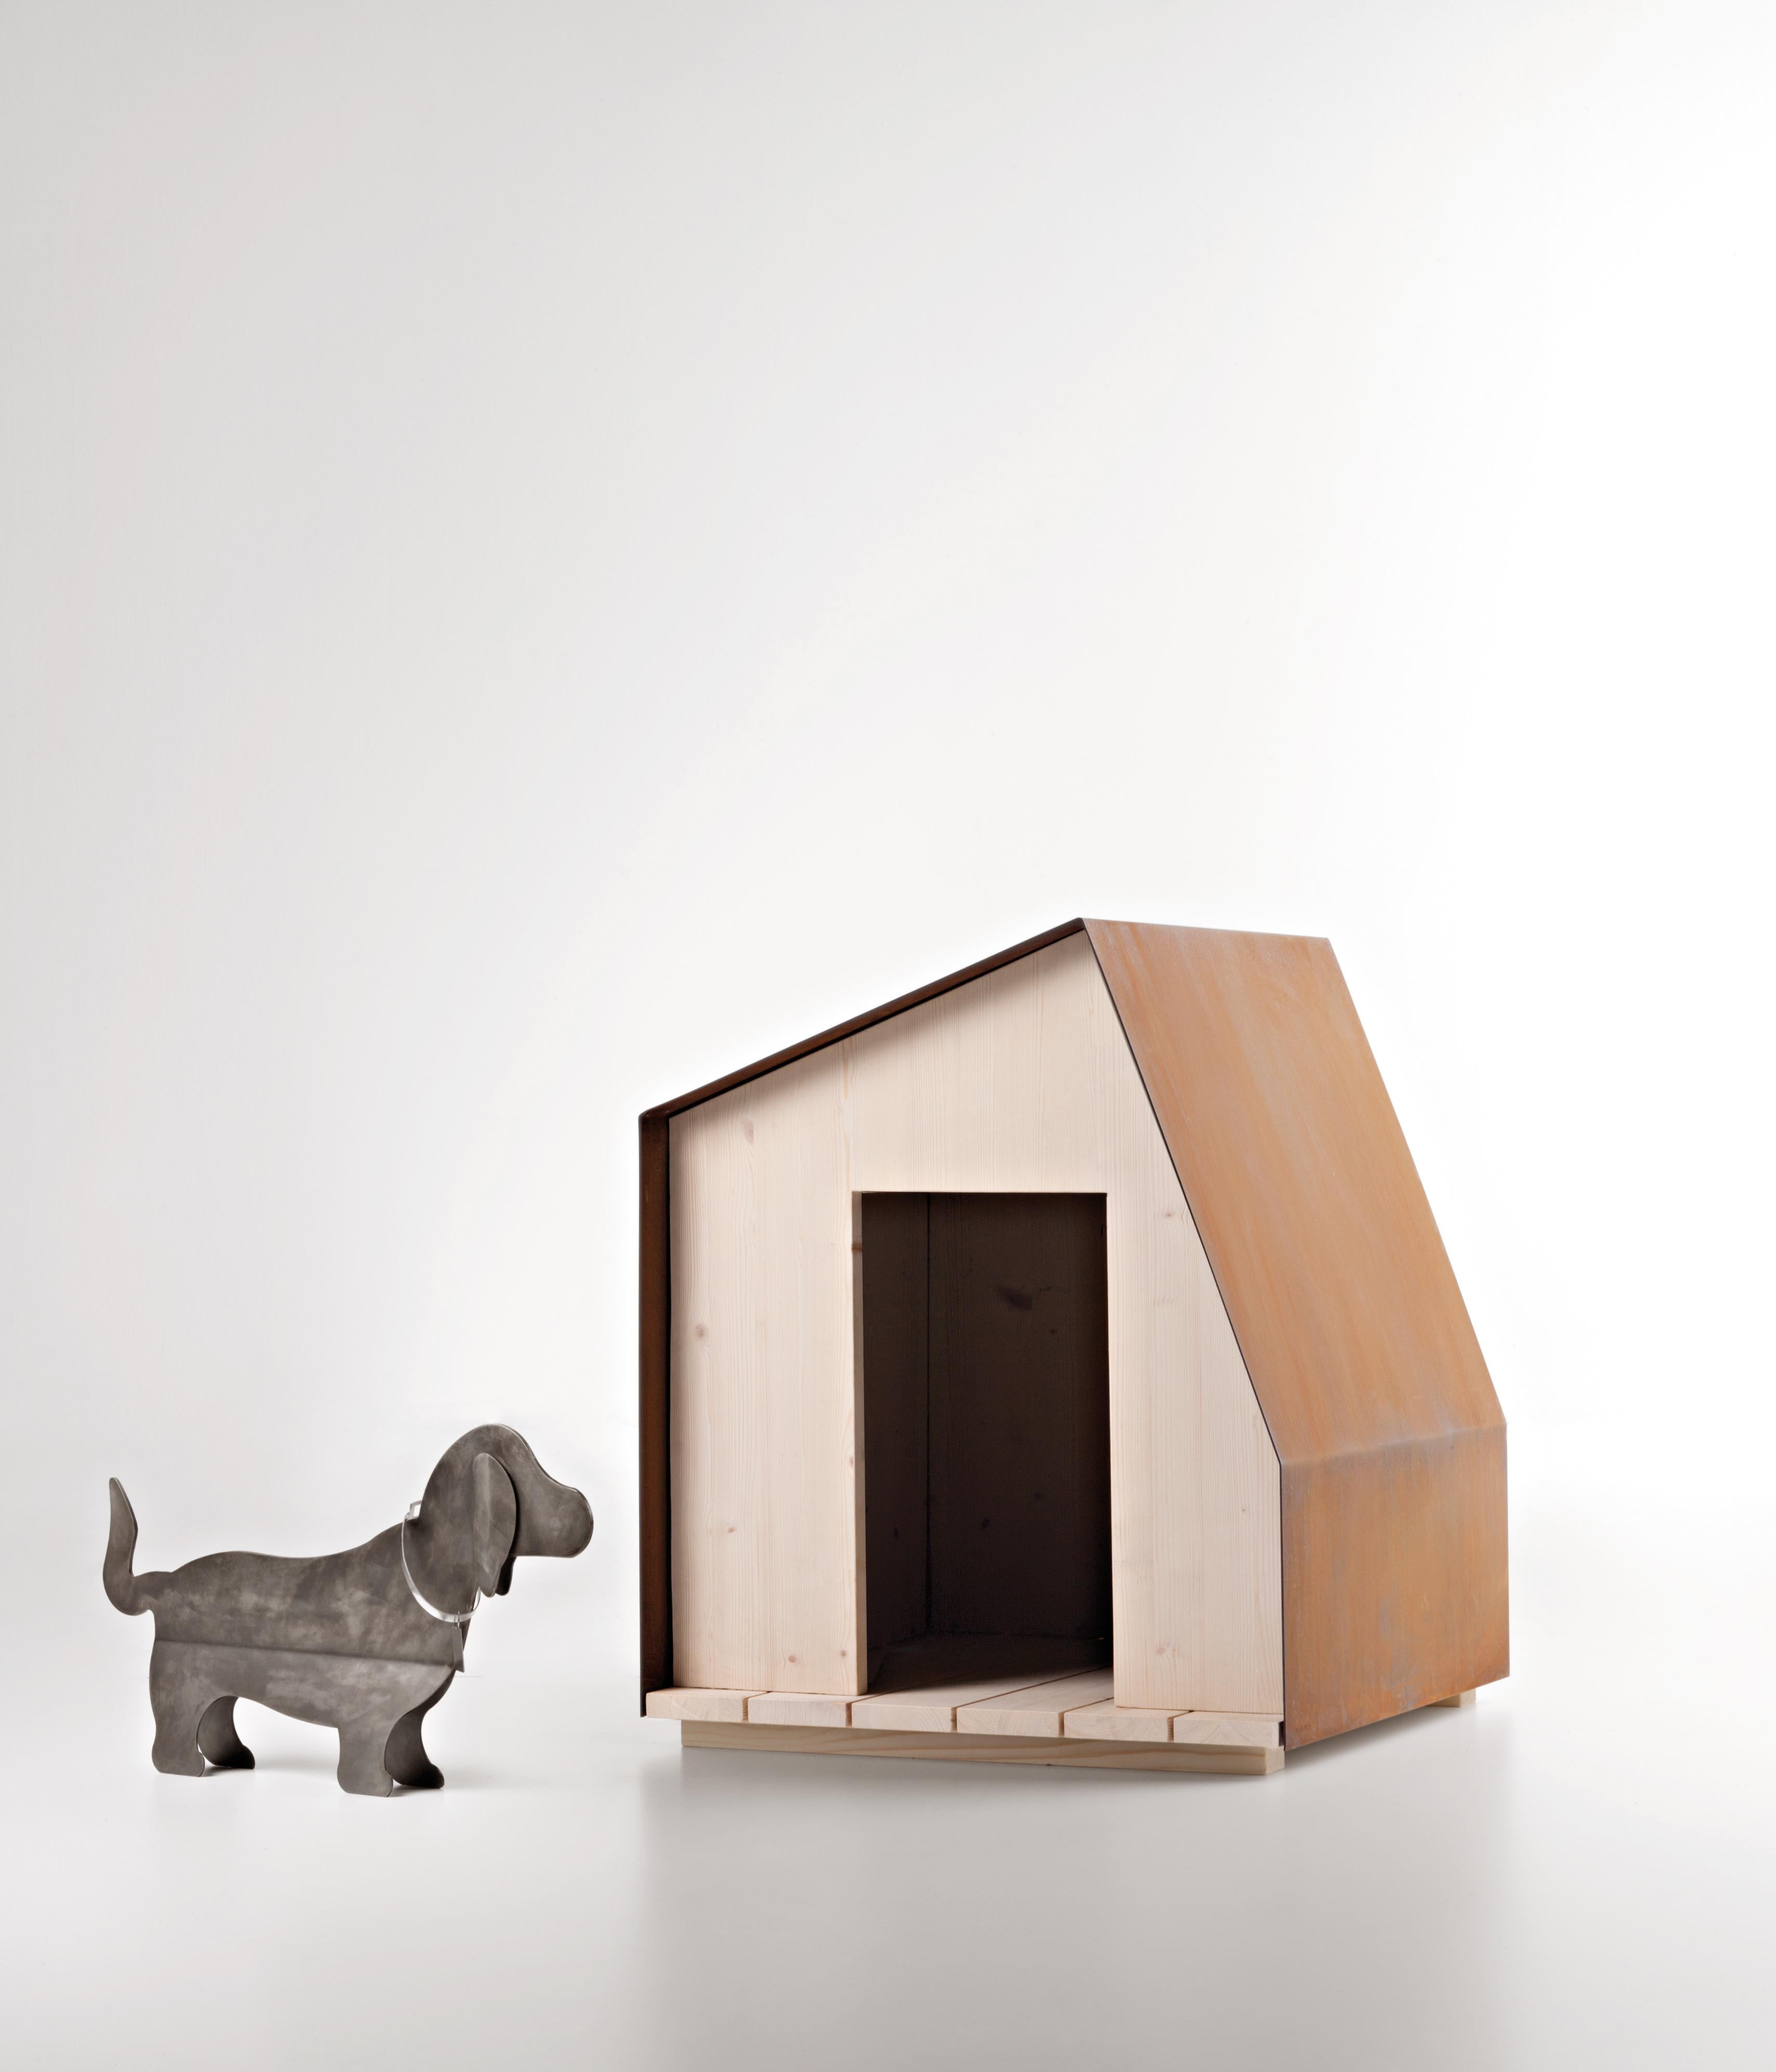 Dog House n°1 erfindet das Zuhause für unsere pelzigen Freunde neu. Als Version von Cottage n°1 bietet es eine konzeptionelle Überarbeitung traditioneller Zwinger, wobei der Schwerpunkt auf den Eigenschaften der Baumaterialien liegt, die dem besten